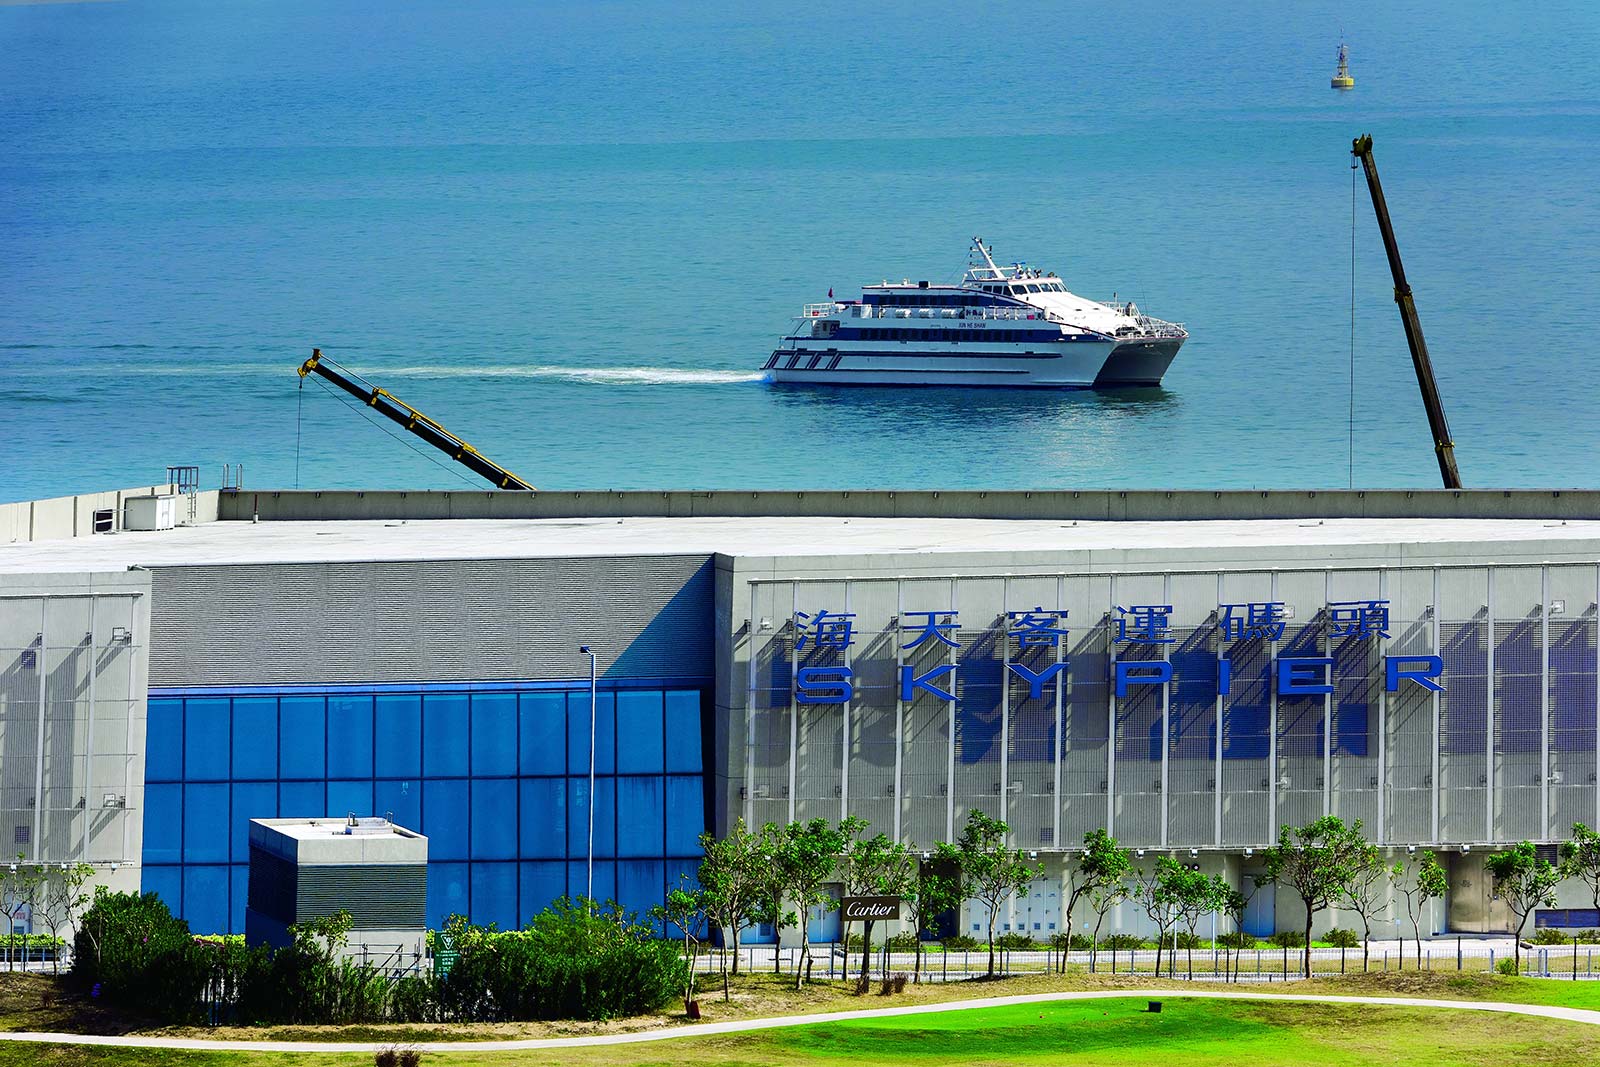 Hong Kong International Airport Skypier ferry